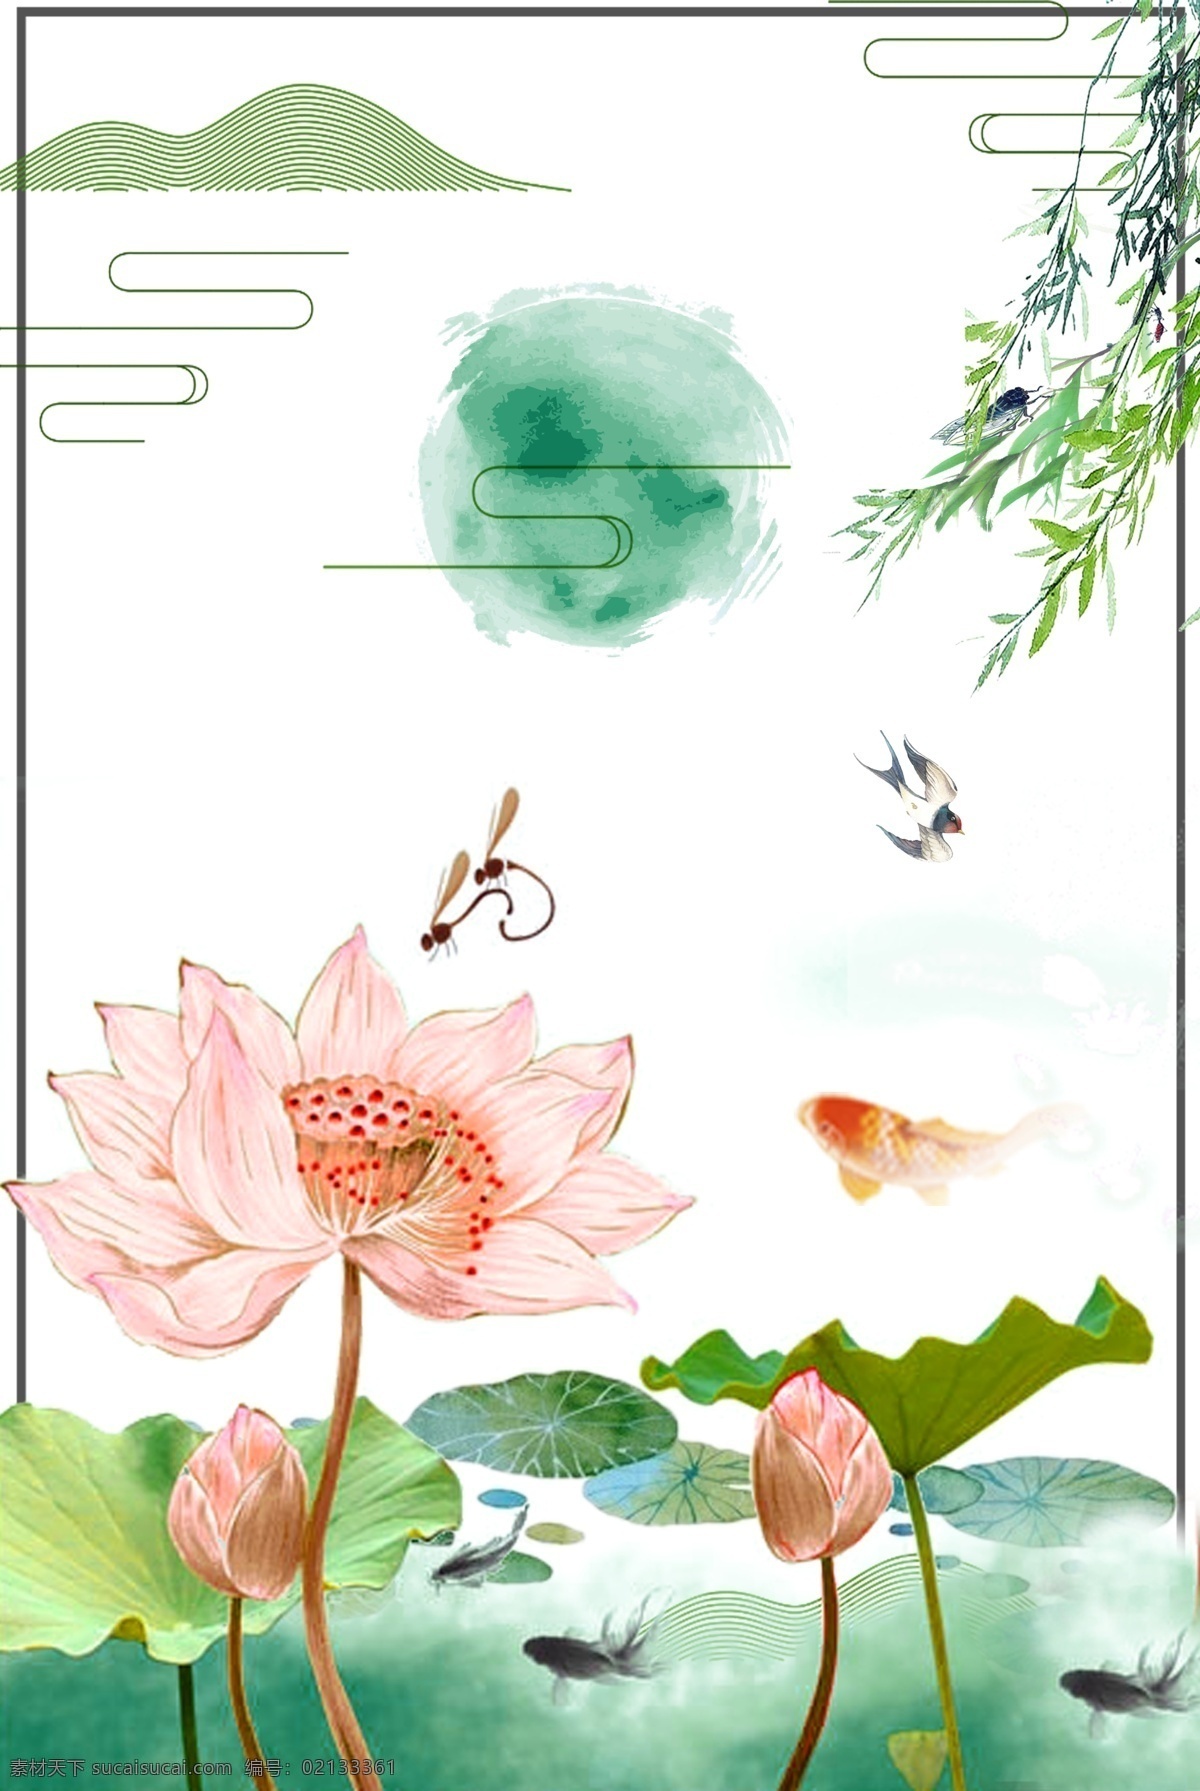 夏至 荷塘 中国 风 海报 背景 中国风 海报背景 平面背景 绿叶 荷花 蜻蜓 psd分层